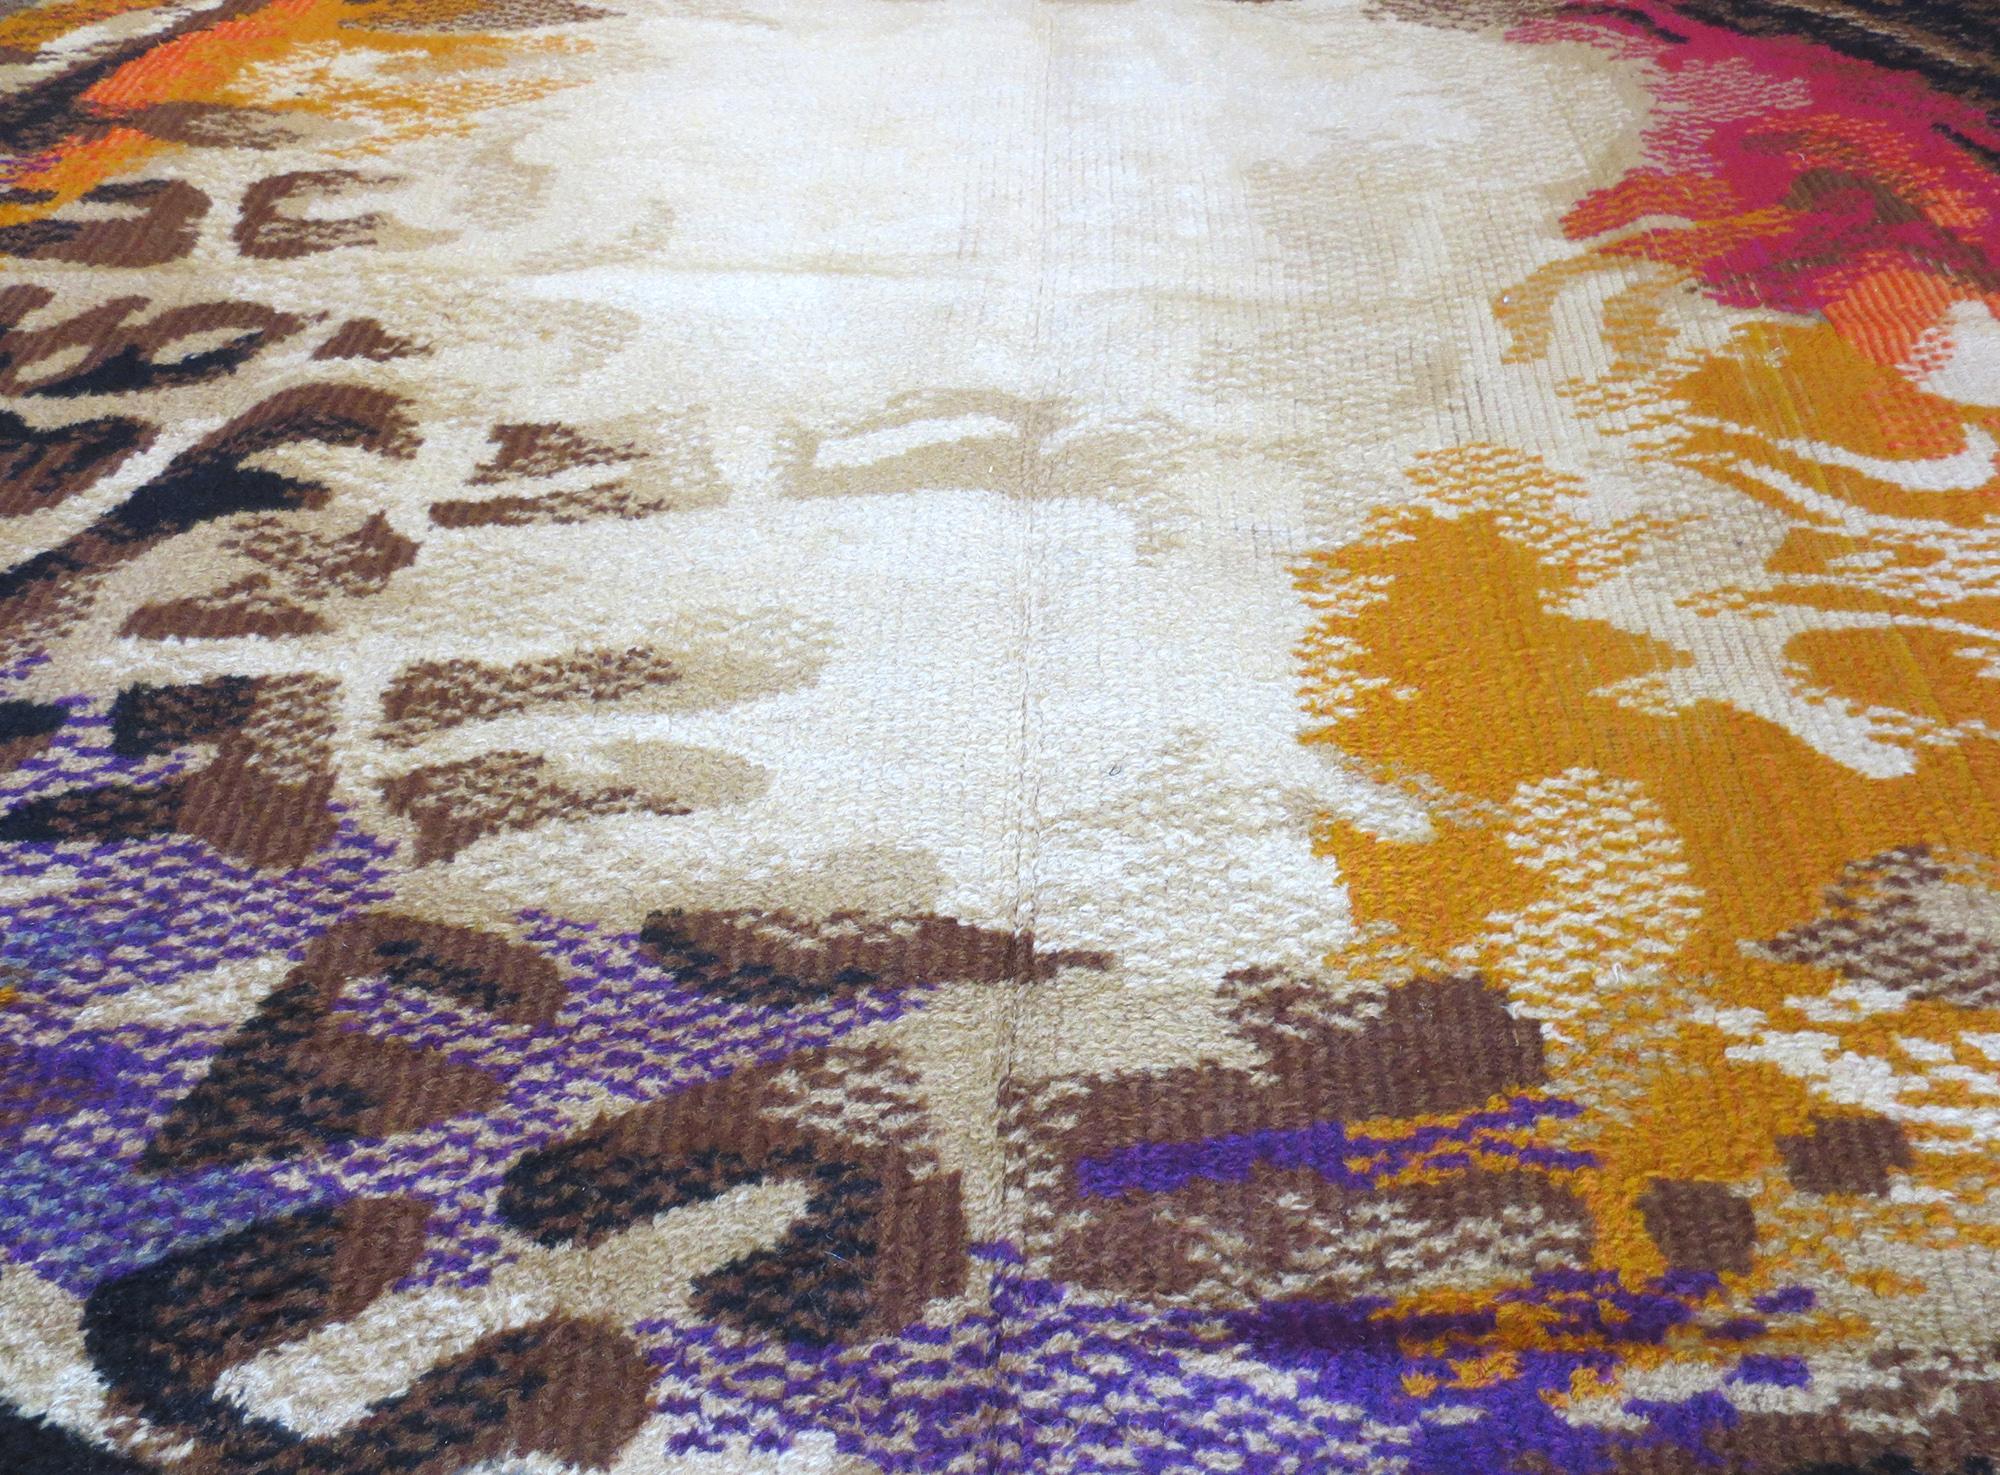 Il s'agit d'un tapis shag scandinave déco vintage, au design intriguant et vraiment unique parmi les tapis scandinaves vintage. Fabriqué au milieu du XXe siècle, le design est de nature abstraite et présente des couleurs vives spectaculaires sur